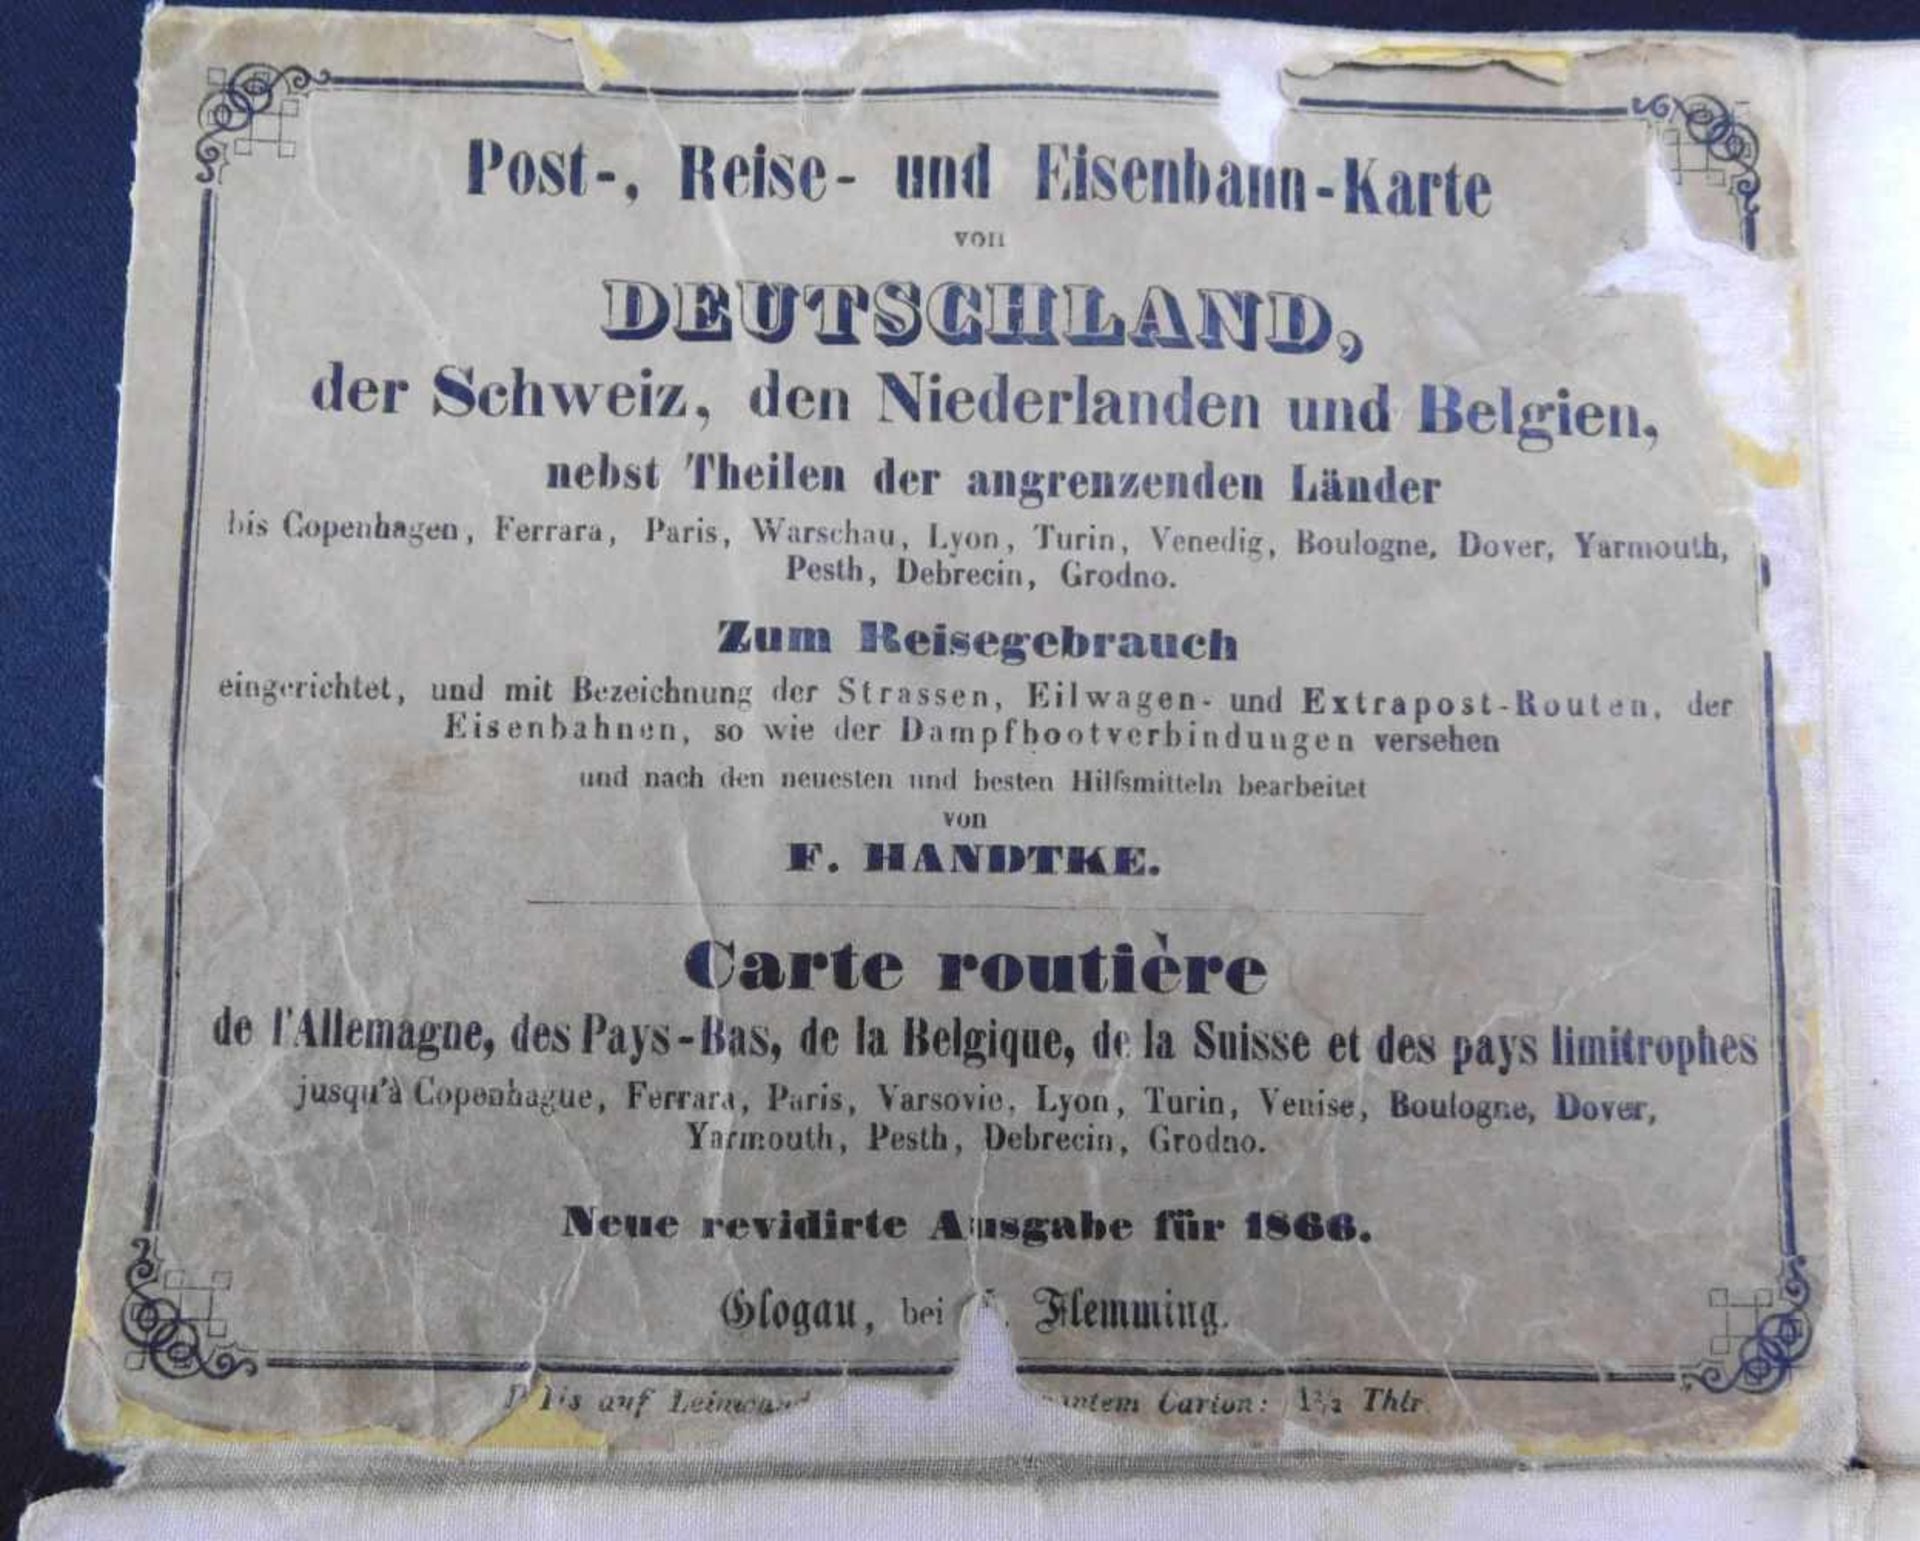 Post-, Reise- u. Eisenbahnkarte, 1866, Deutschland und angrenzende Länder, handcoloriert, Papier auf - Image 4 of 6